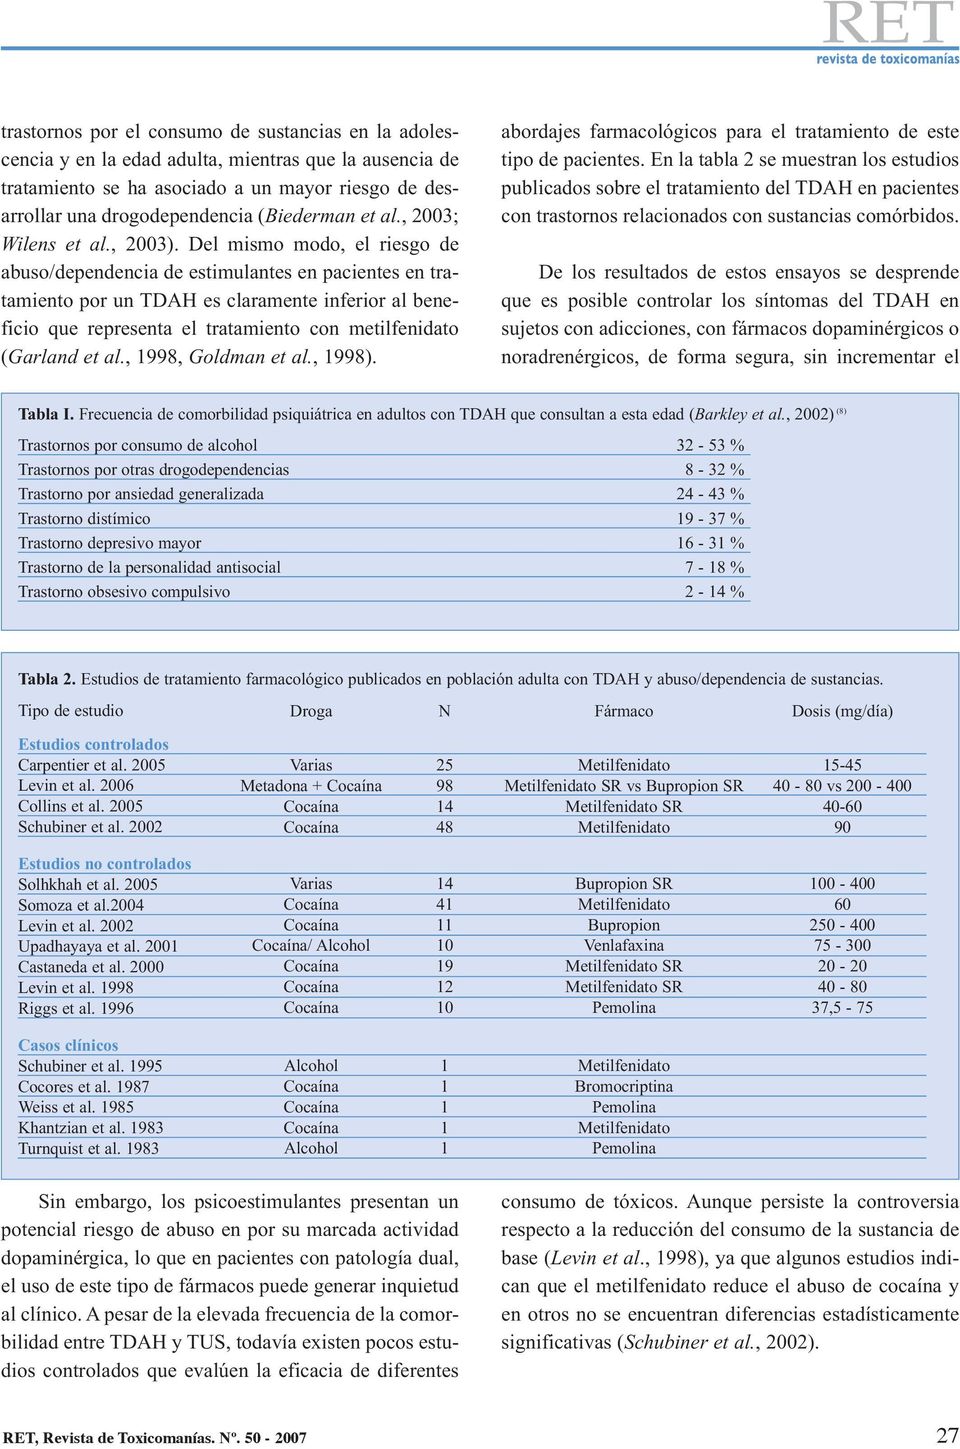 Del mismo modo, el riesgo de abuso/dependencia de estimulantes en pacientes en tratamiento por un TDAH es claramente inferior al beneficio que representa el tratamiento con metilfenidato (Garland et